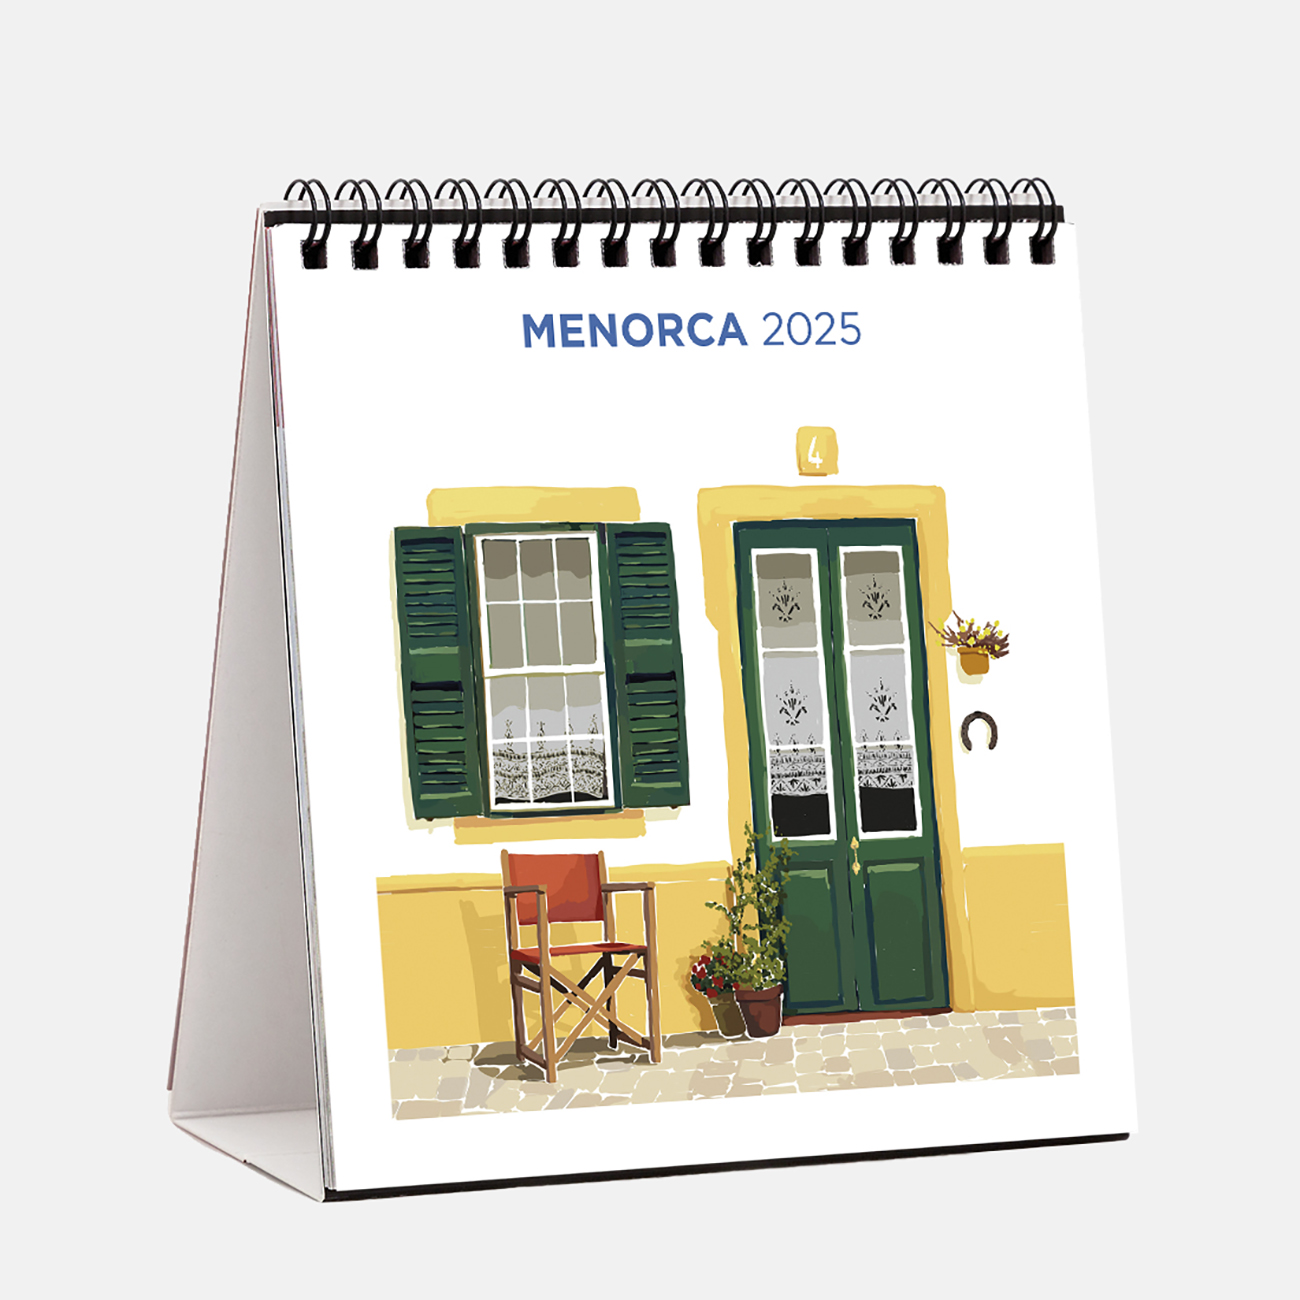 Calendario 2025 Menorca Ilustrado s25me2 calendario sobremesa 2025 menorca